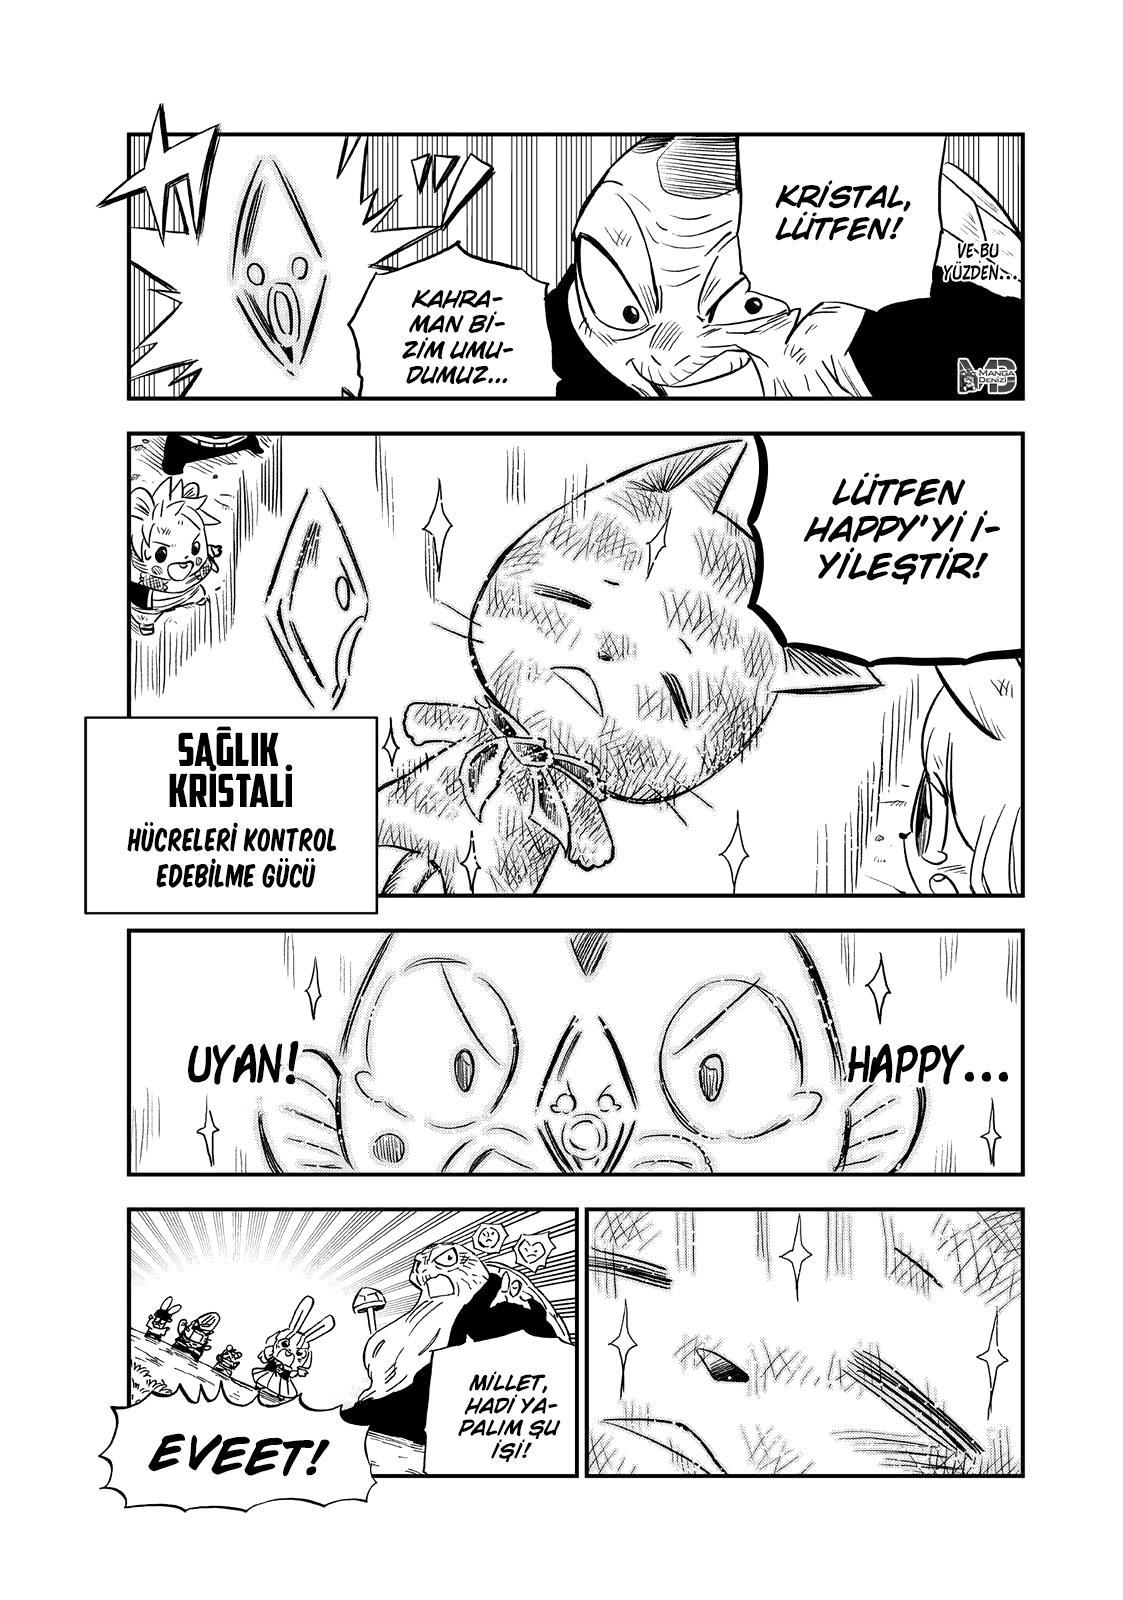 Fairy Tail: Happy's Great Adventure mangasının 76 bölümünün 4. sayfasını okuyorsunuz.